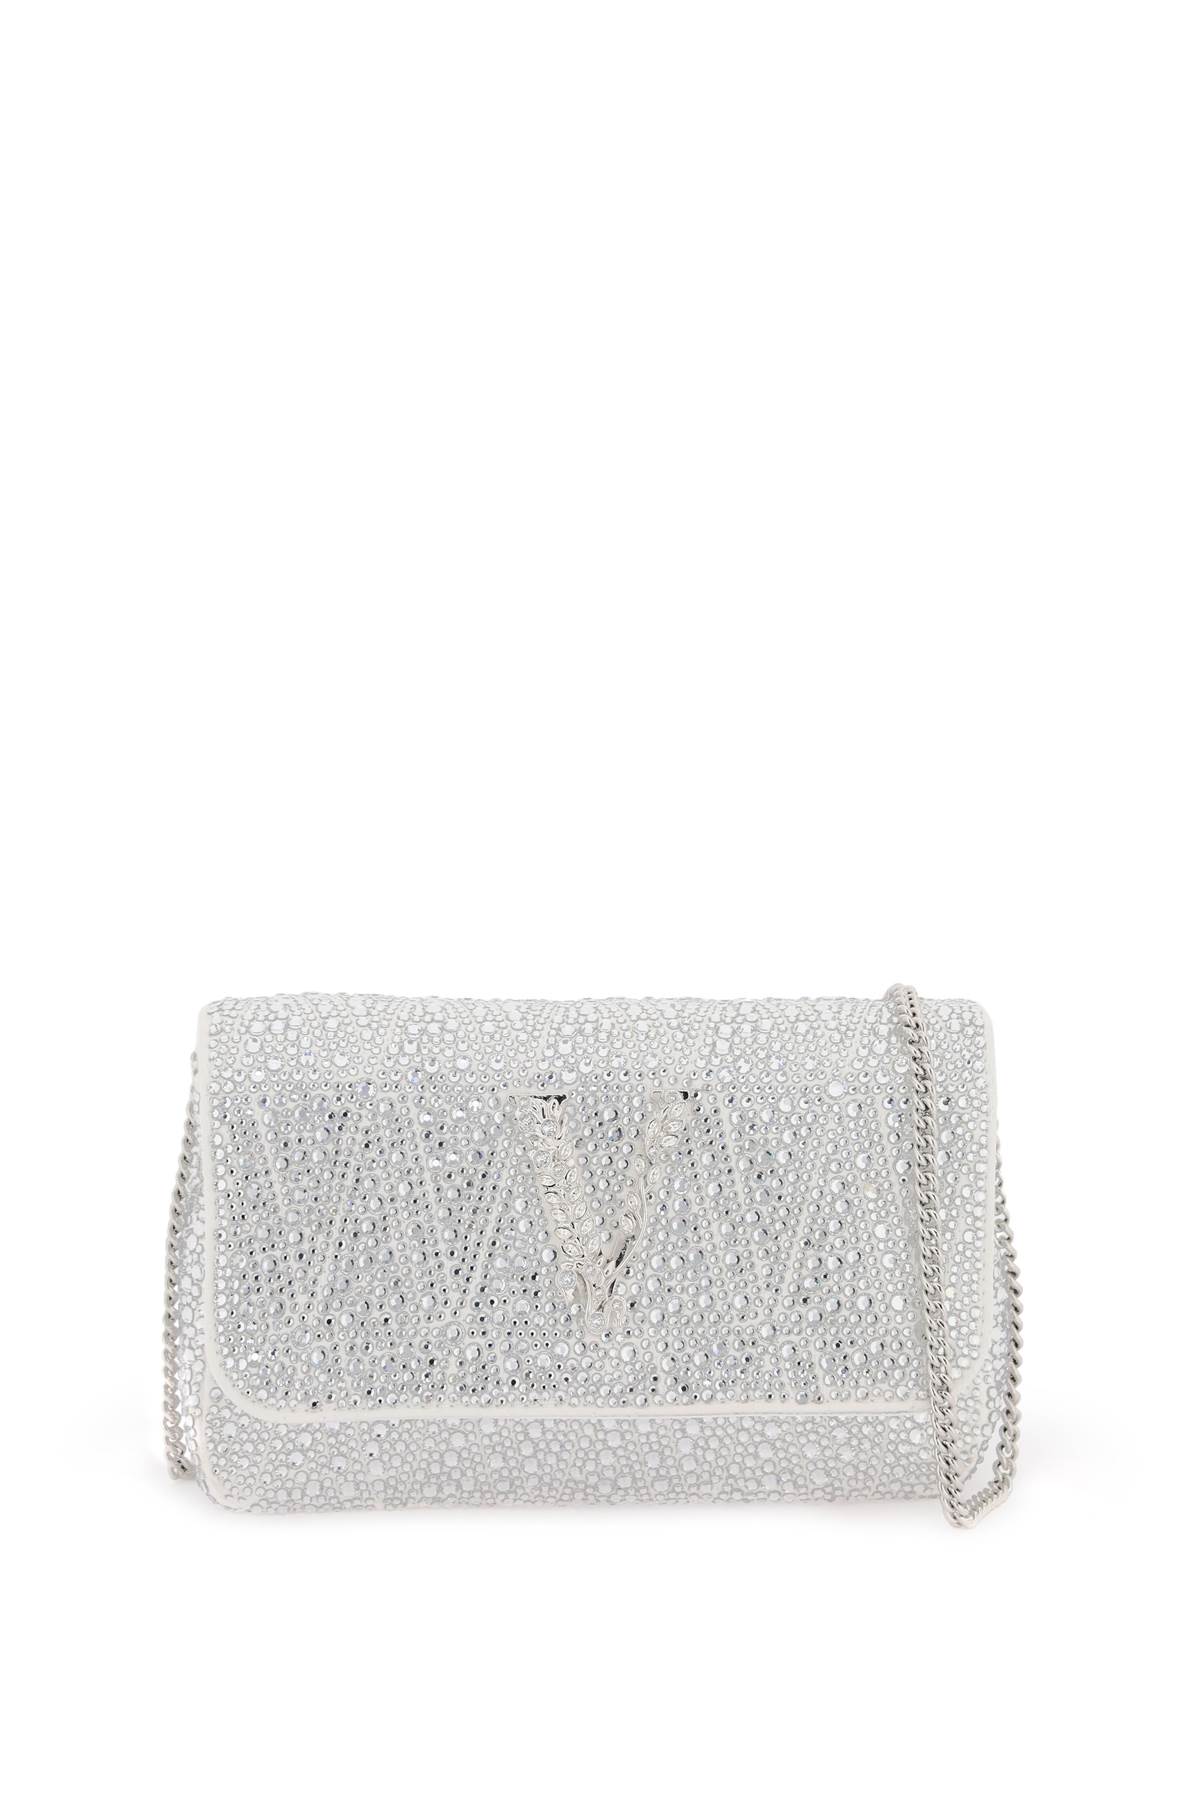 VERSACE Virtus mini crystal-embellished leather shoulder bag